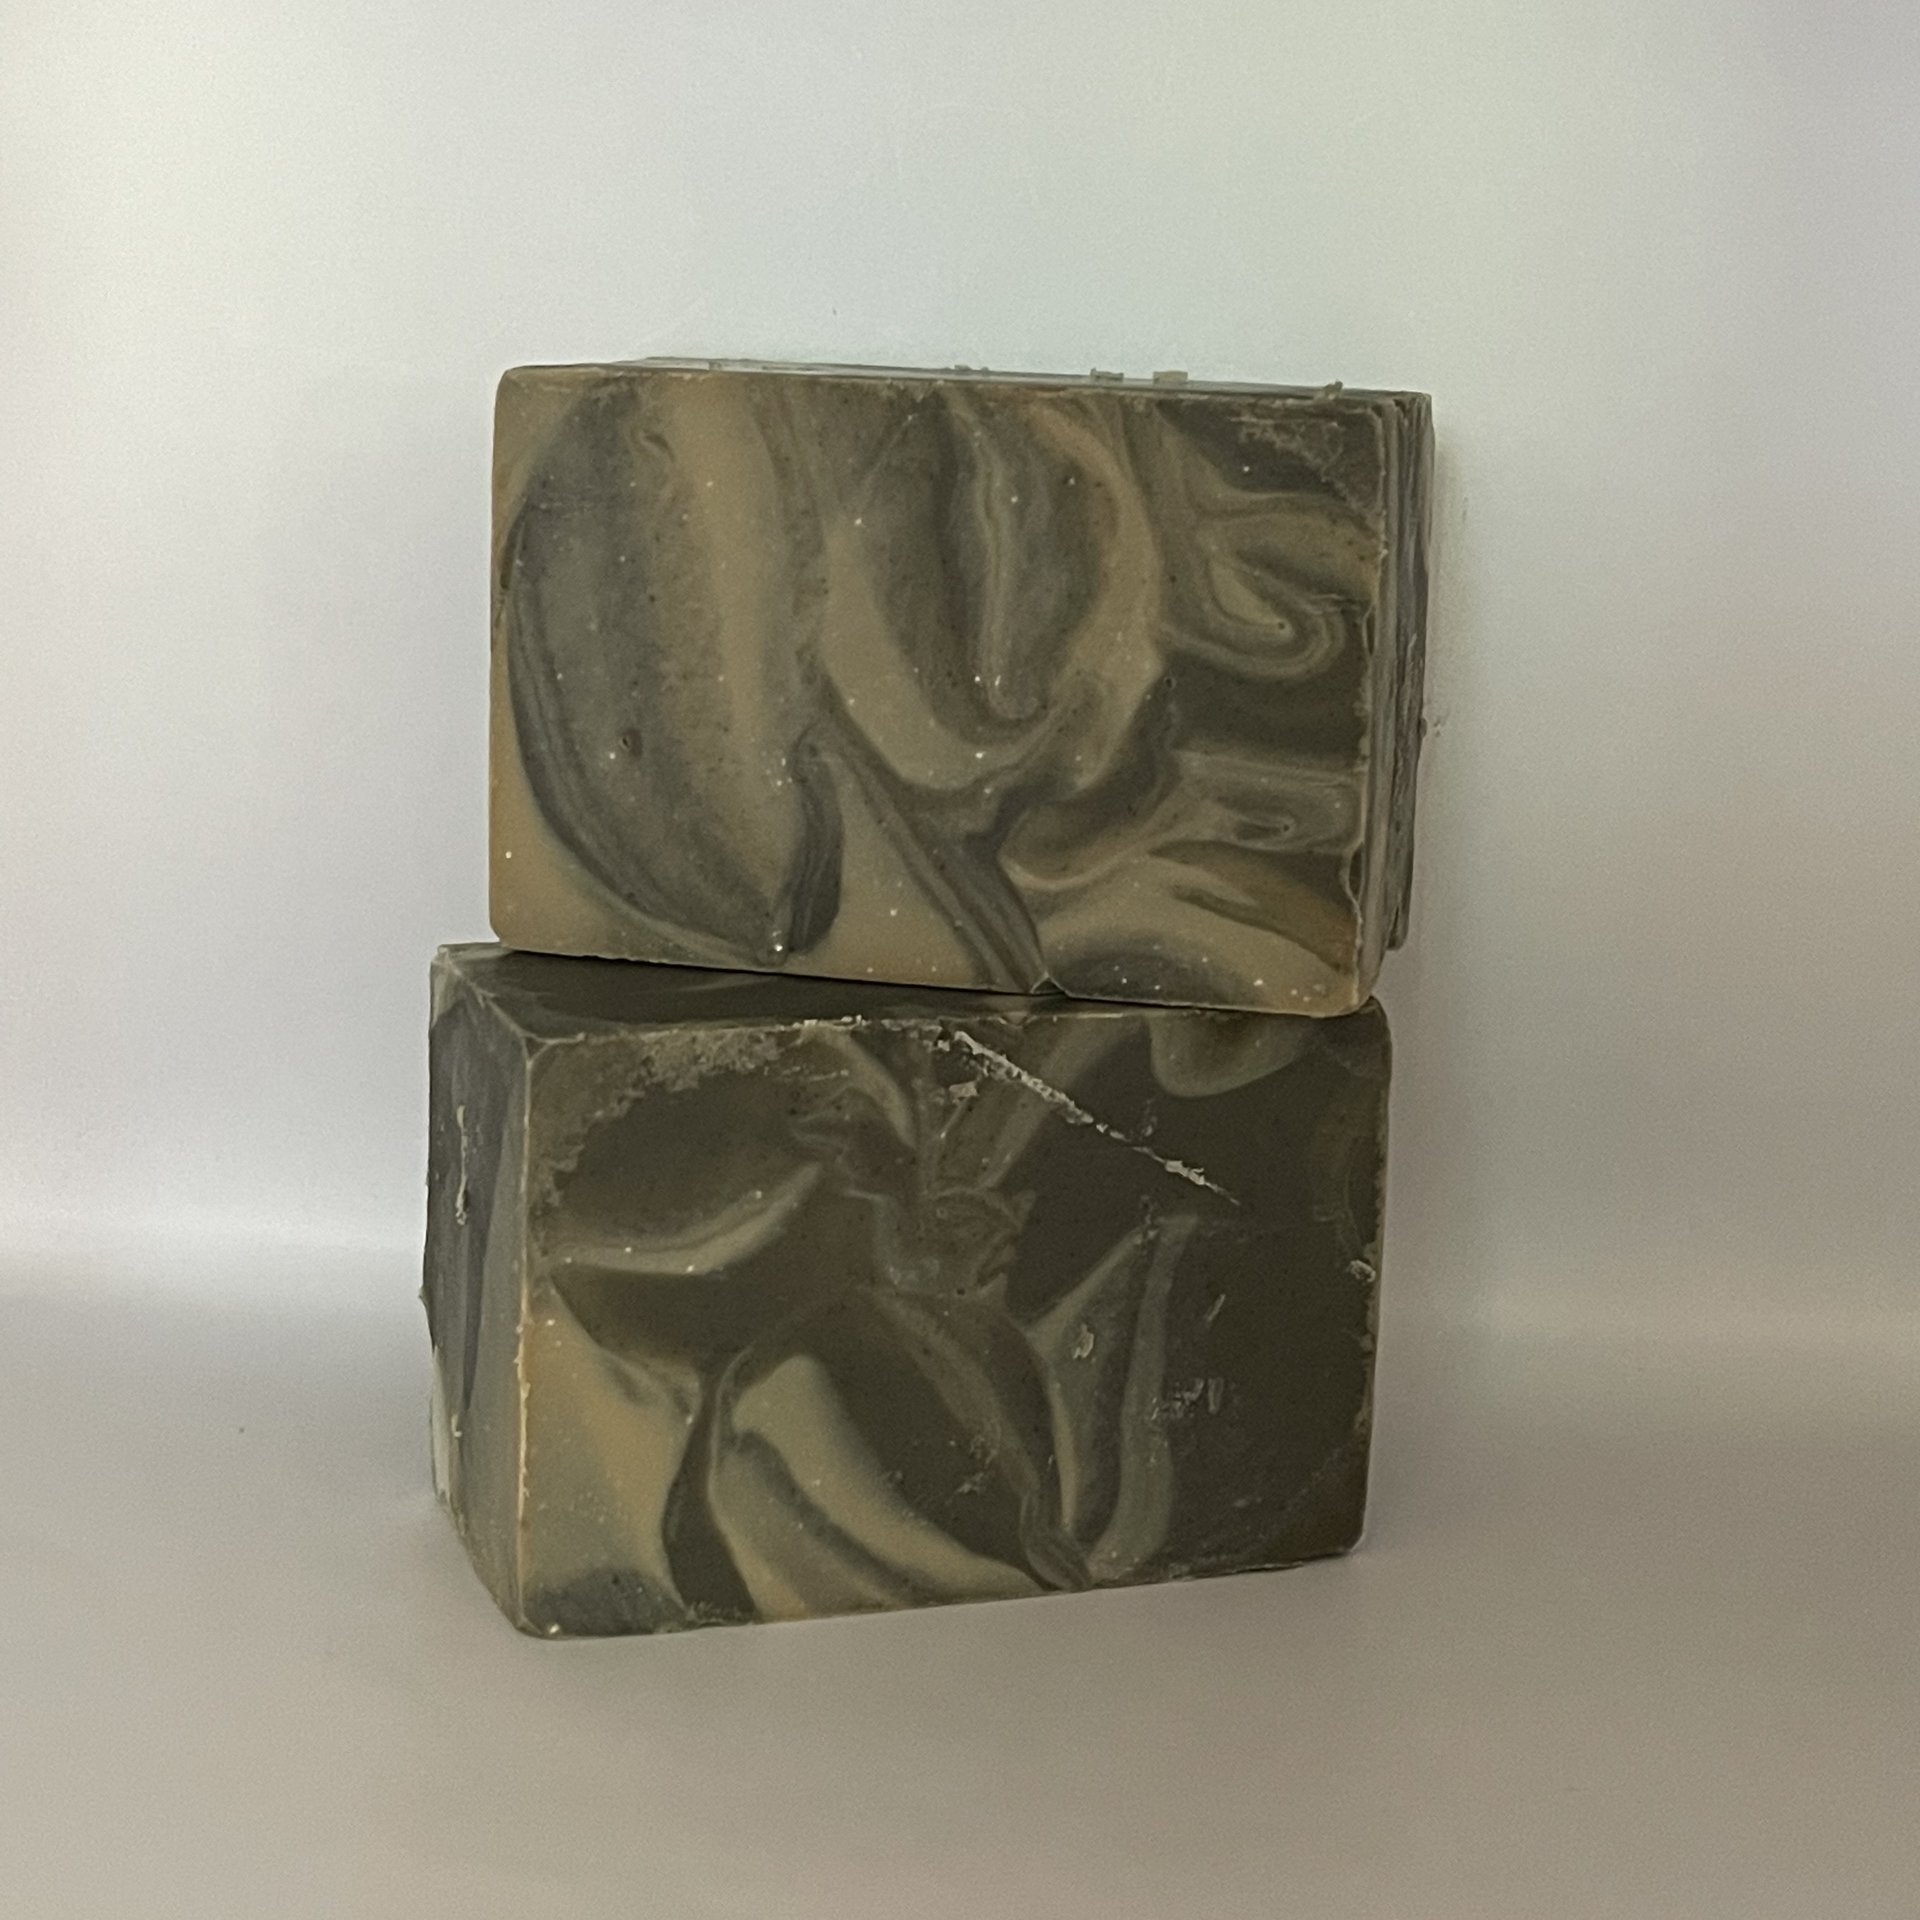 Charcoal, Hemp & Patchouli Soap